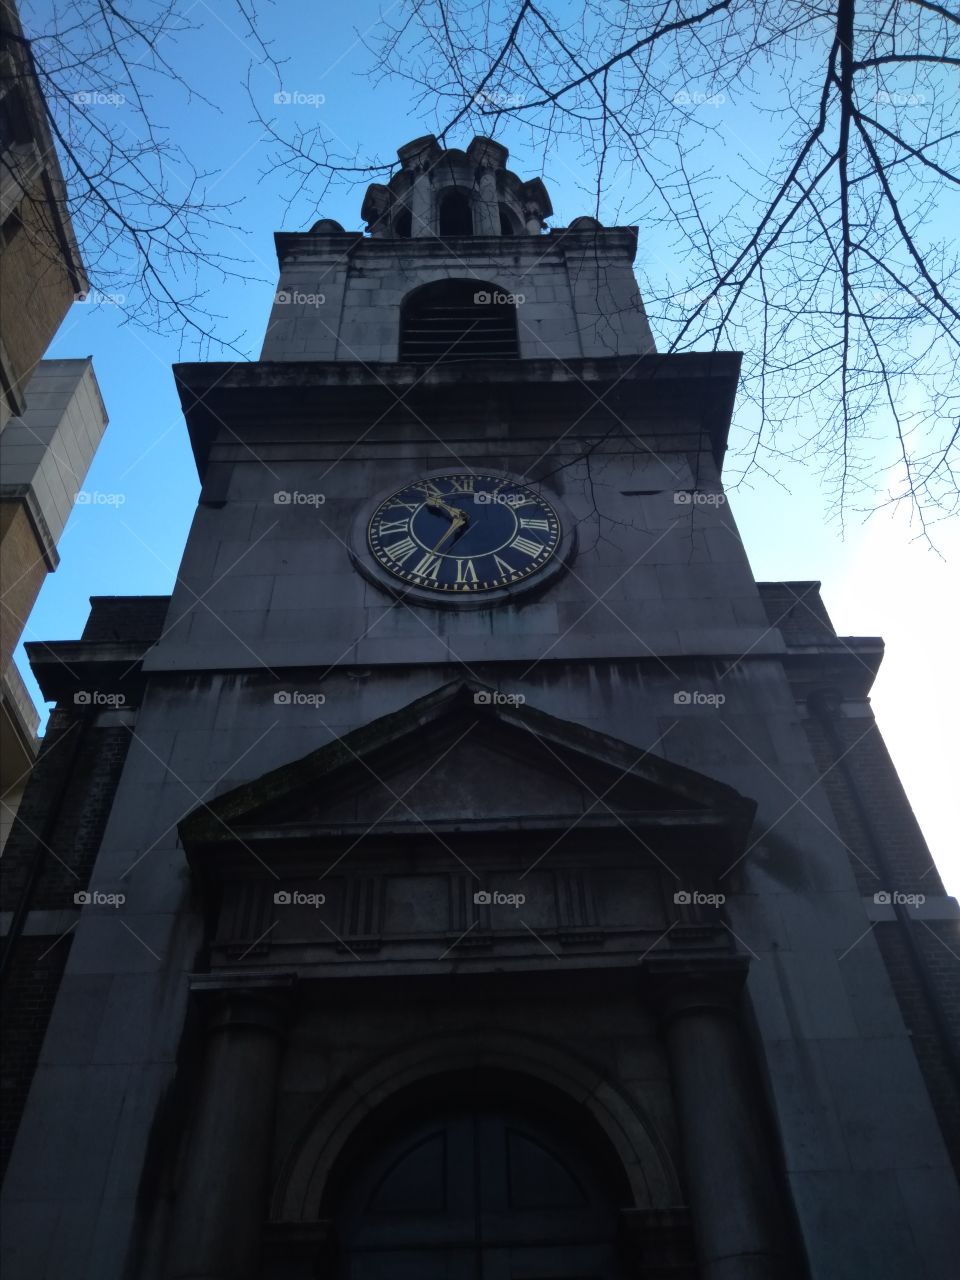 Church of England, East London, United Kingdom